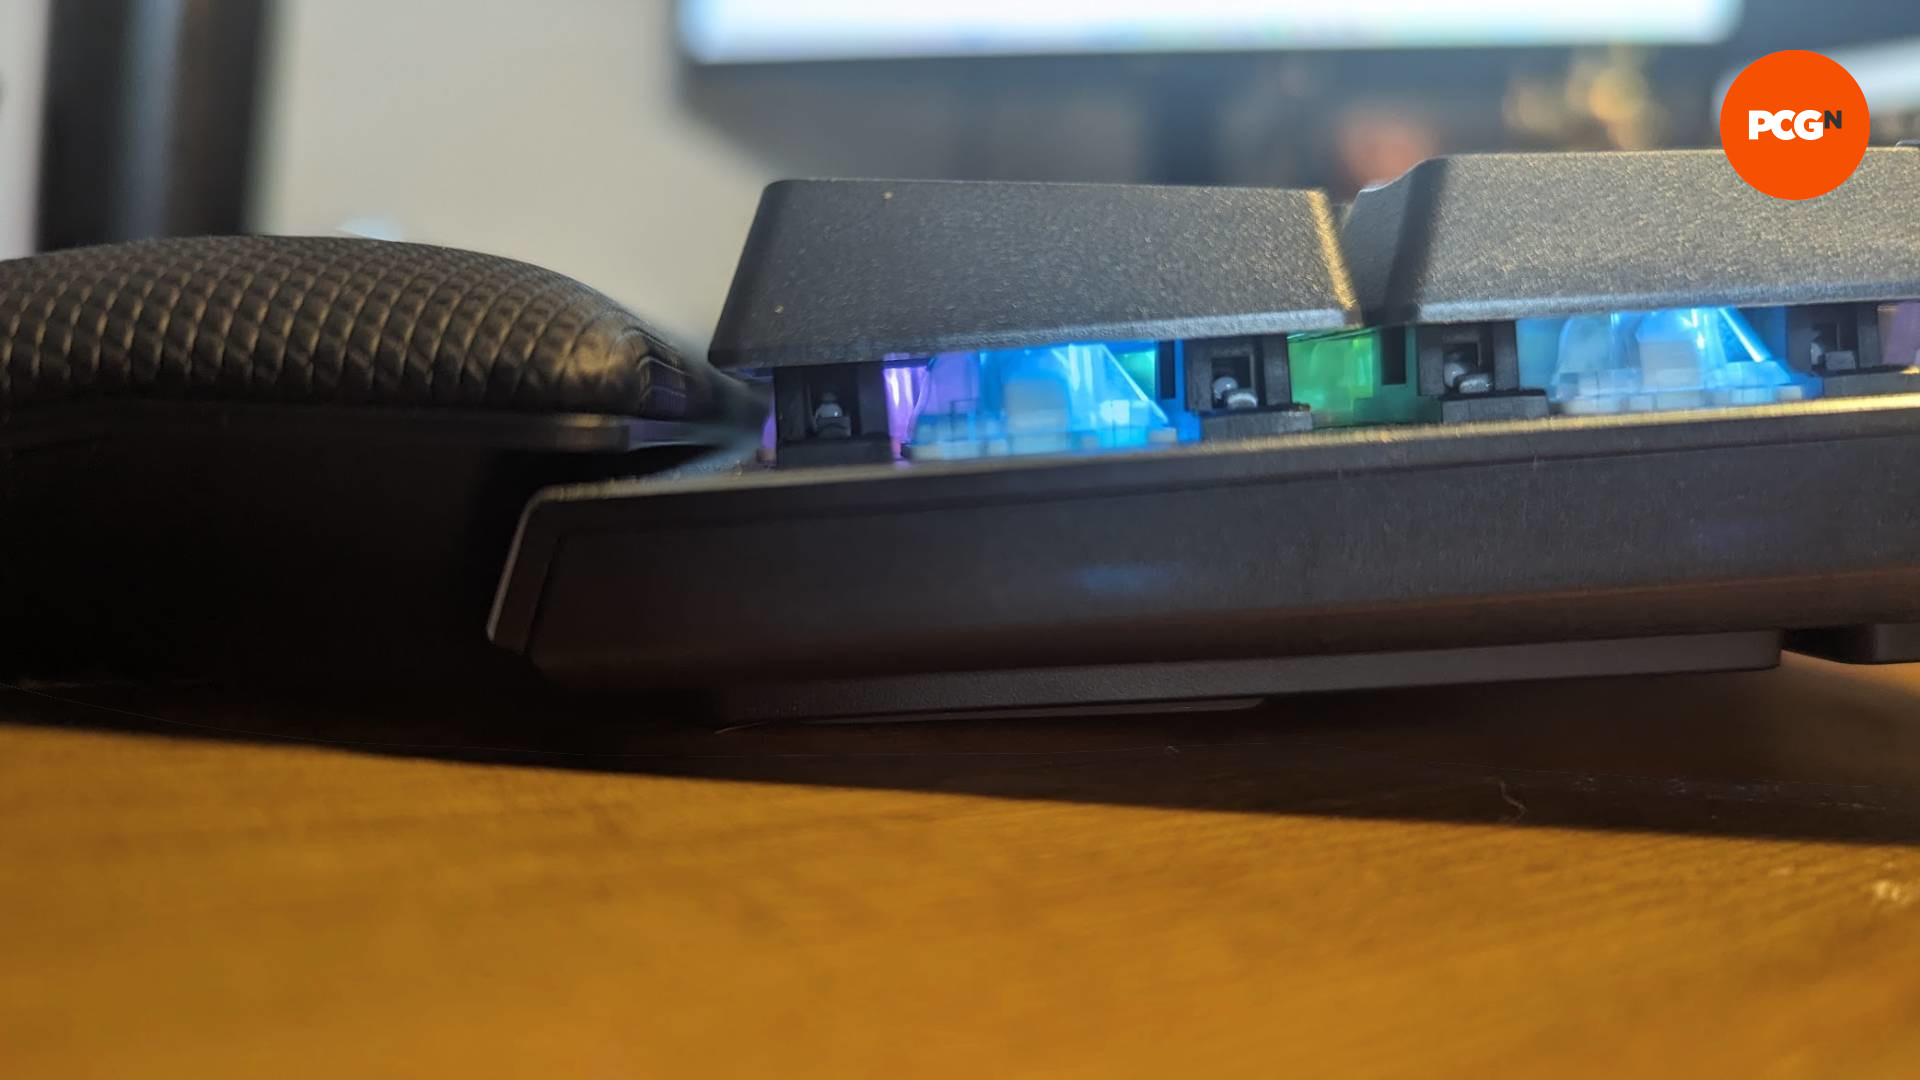 Une vue latérale du clavier de jeu Corsair K70 Max, mettant en valeur ses effets RVB